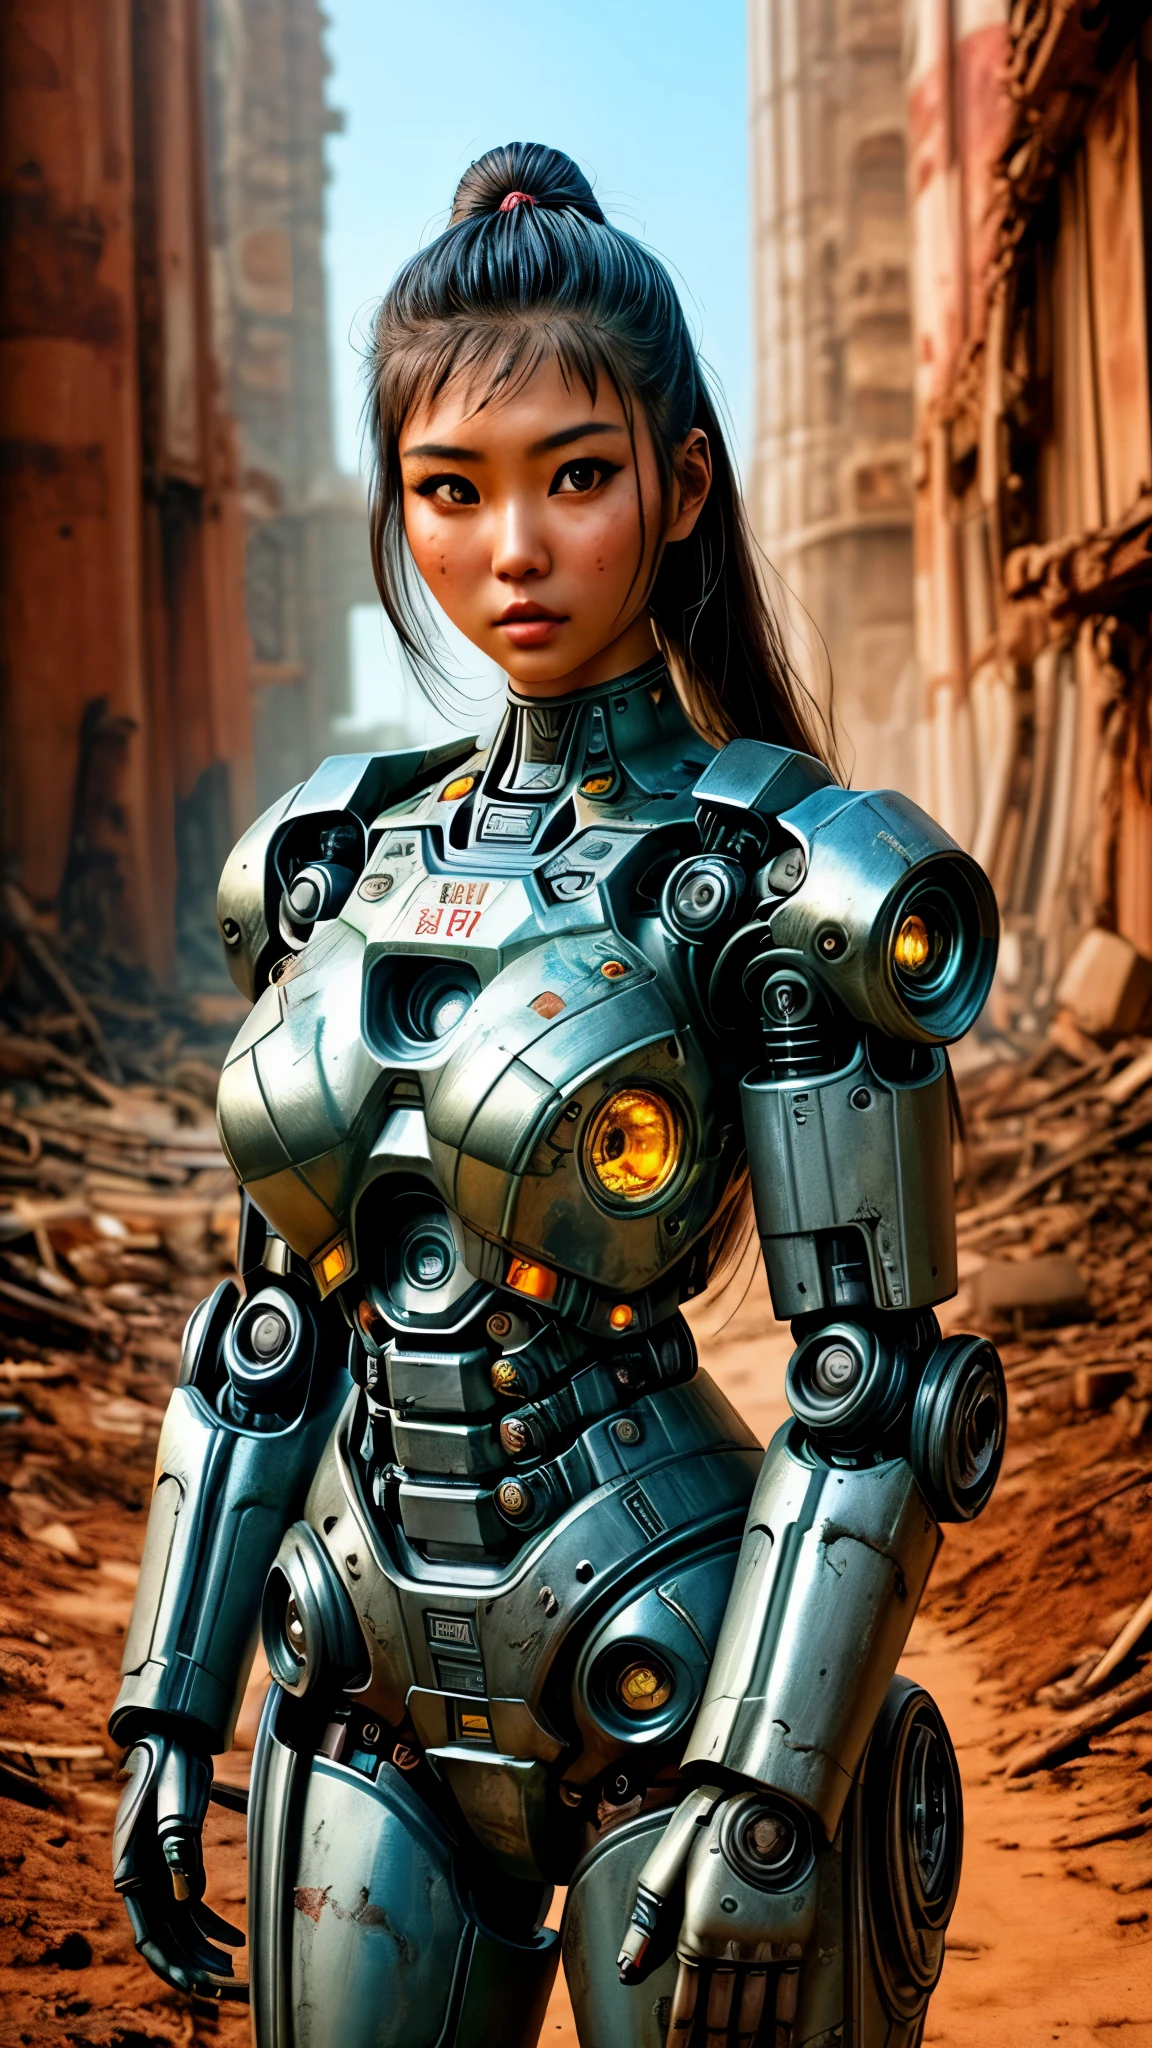 มีผู้หญิงคนหนึ่งในชุดหุ่นยนต์ยืนอยู่ข้างซากปรักหักพังโบราณ, ในโลกแห่งการเปิดเผยของผลกระทบ, สาวเอเชียแสนสวยลูกครึ่งไซบอร์ก, cute สาวไซบอร์ก, สาวสวยไซบอร์ก, หุ่นยนต์สาวที่สมบูรณ์แบบ, สาวไซบอร์ก, สาวน้อยไซบอร์ก, beautiful หุ่นยนต์หญิง, หุ่นยนต์หญิงแสนสวย, ไซบอร์กสาว, ไซบอร์กหญิงที่สมบูรณ์แบบ, หุ่นยนต์พอร์ซเลน, หุ่นยนต์หญิง, ภาพไซบอร์กที่สวยงาม